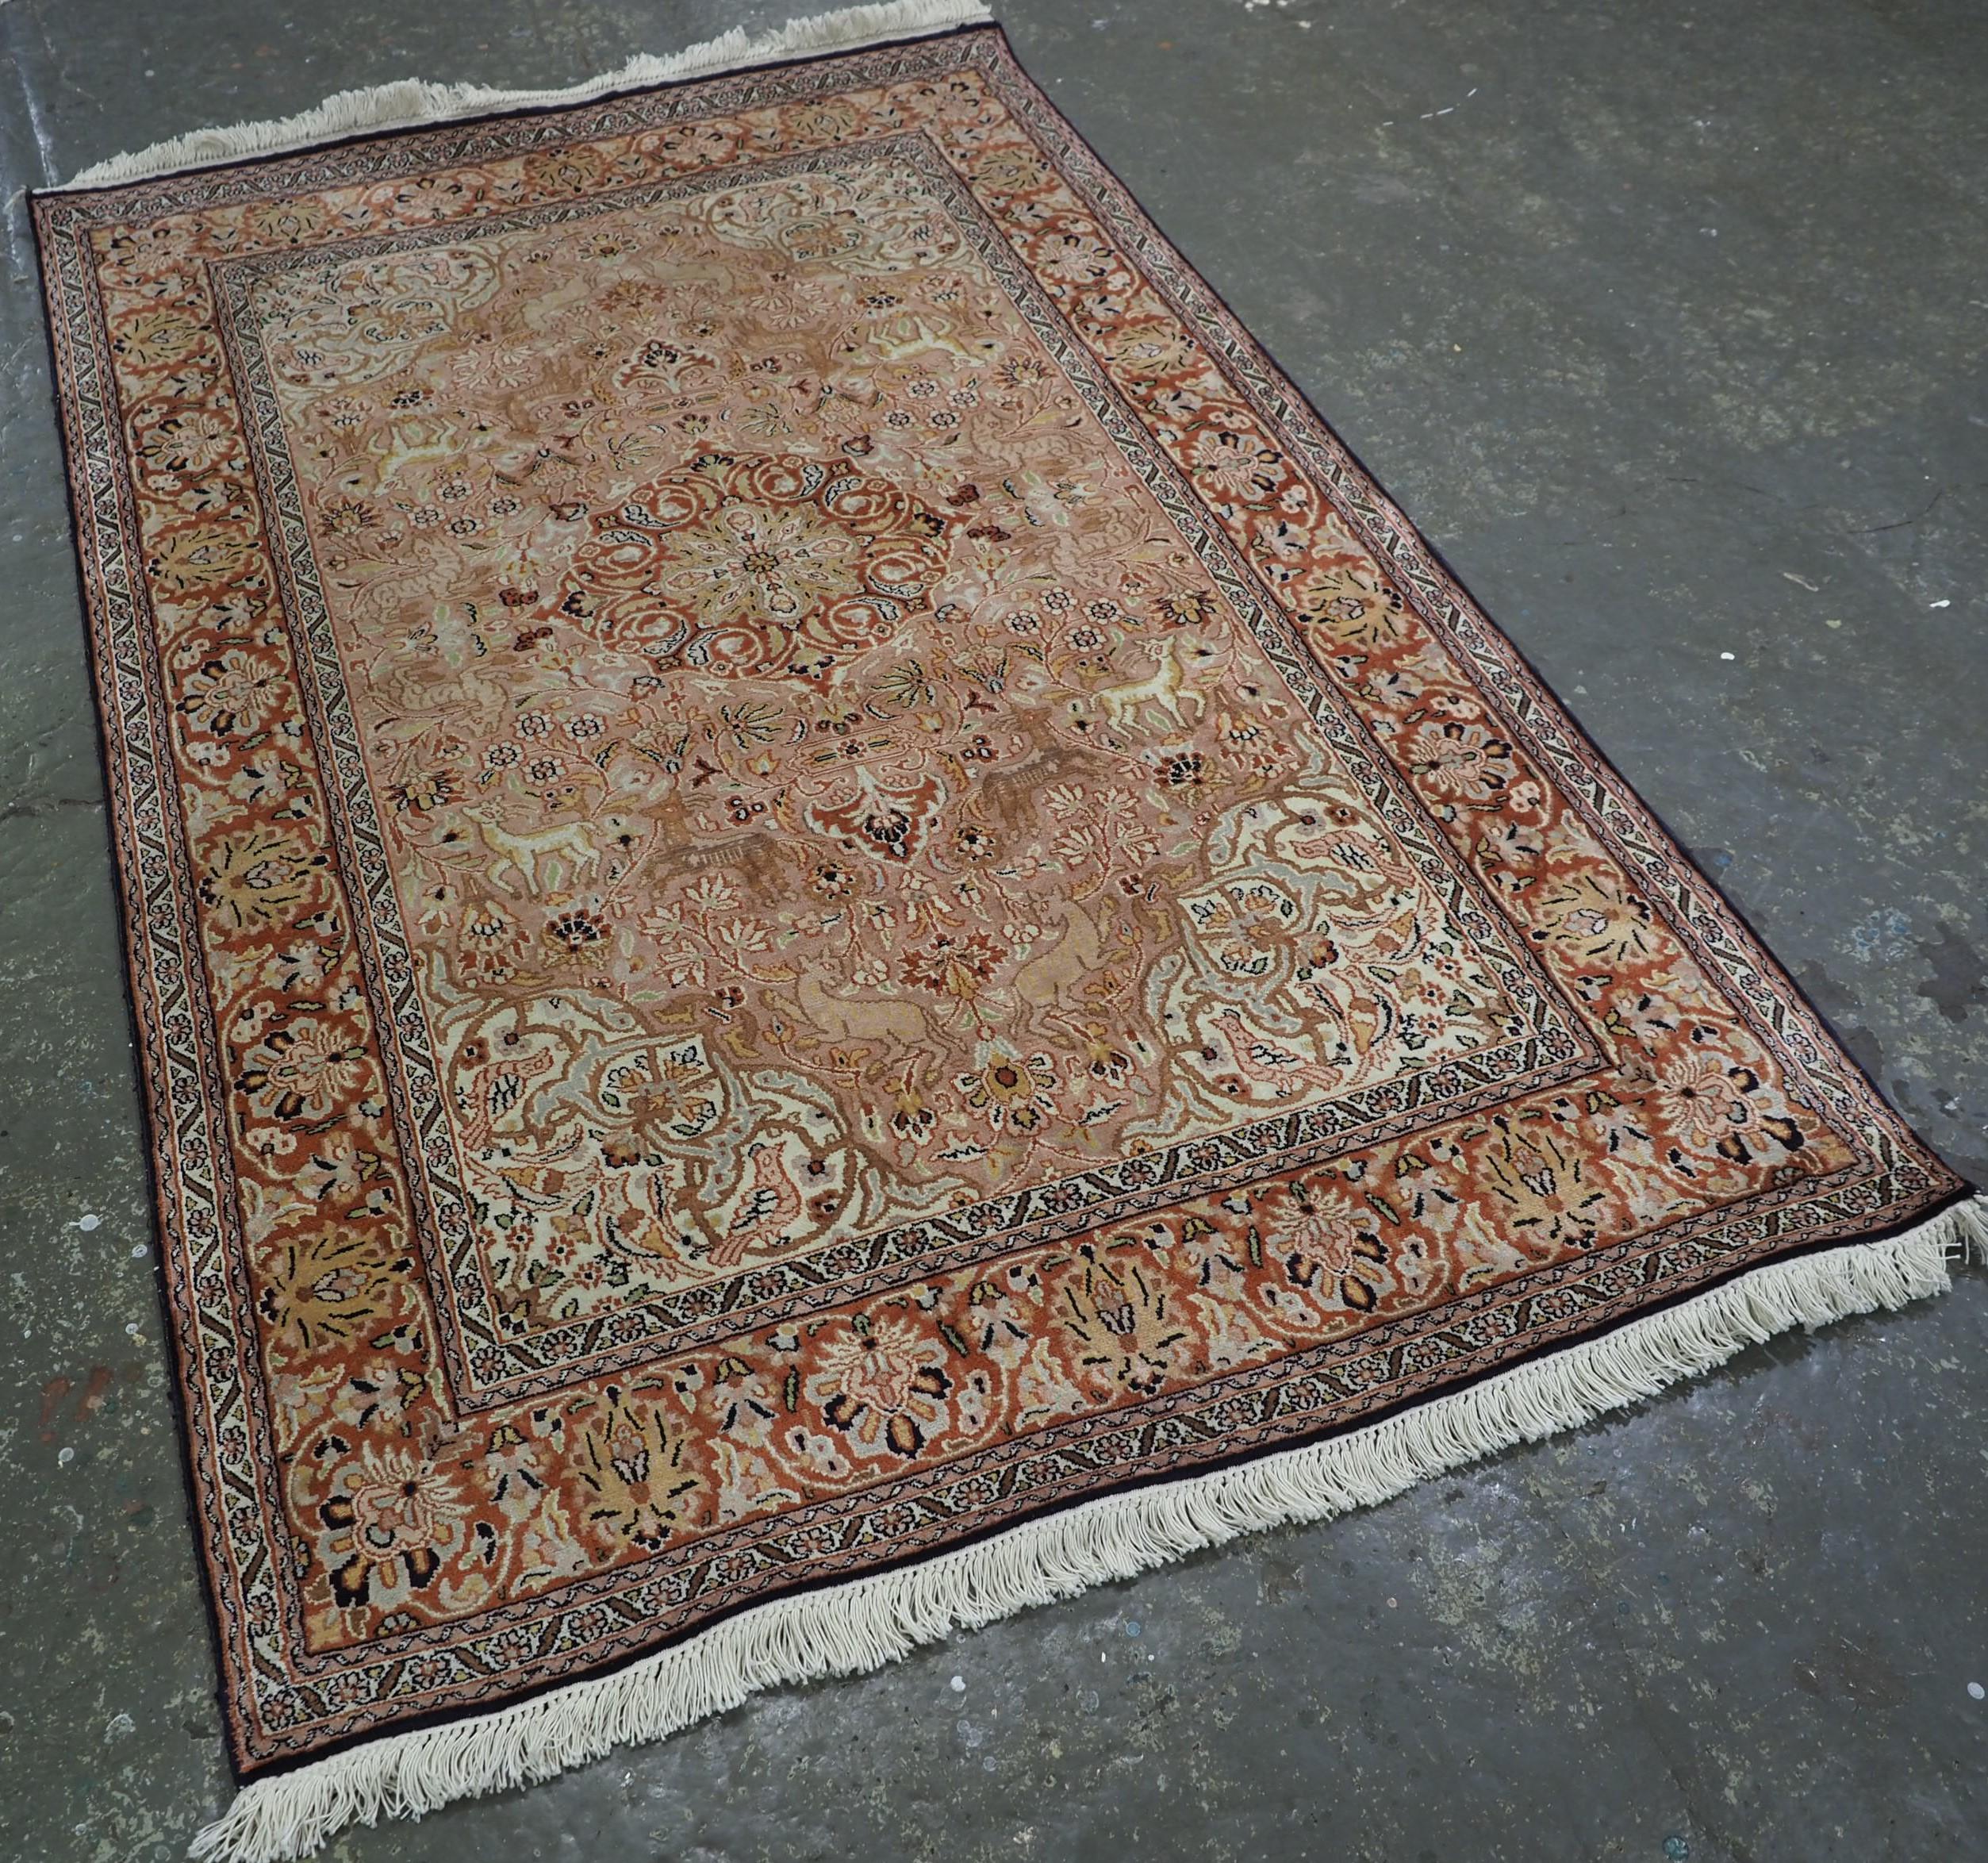 
Größe: 6ft 0in x 4ft 0in (184 x 123cm).

Ein gutes Beispiel für einen Seidenteppich aus Kaschmir mit einem kleinen Medaillonmuster, umgeben von einem Garten mit Tieren und Blumen.

Etwa 30 Jahre alt.

Der Teppich hat eine sehr weiche Farbpalette